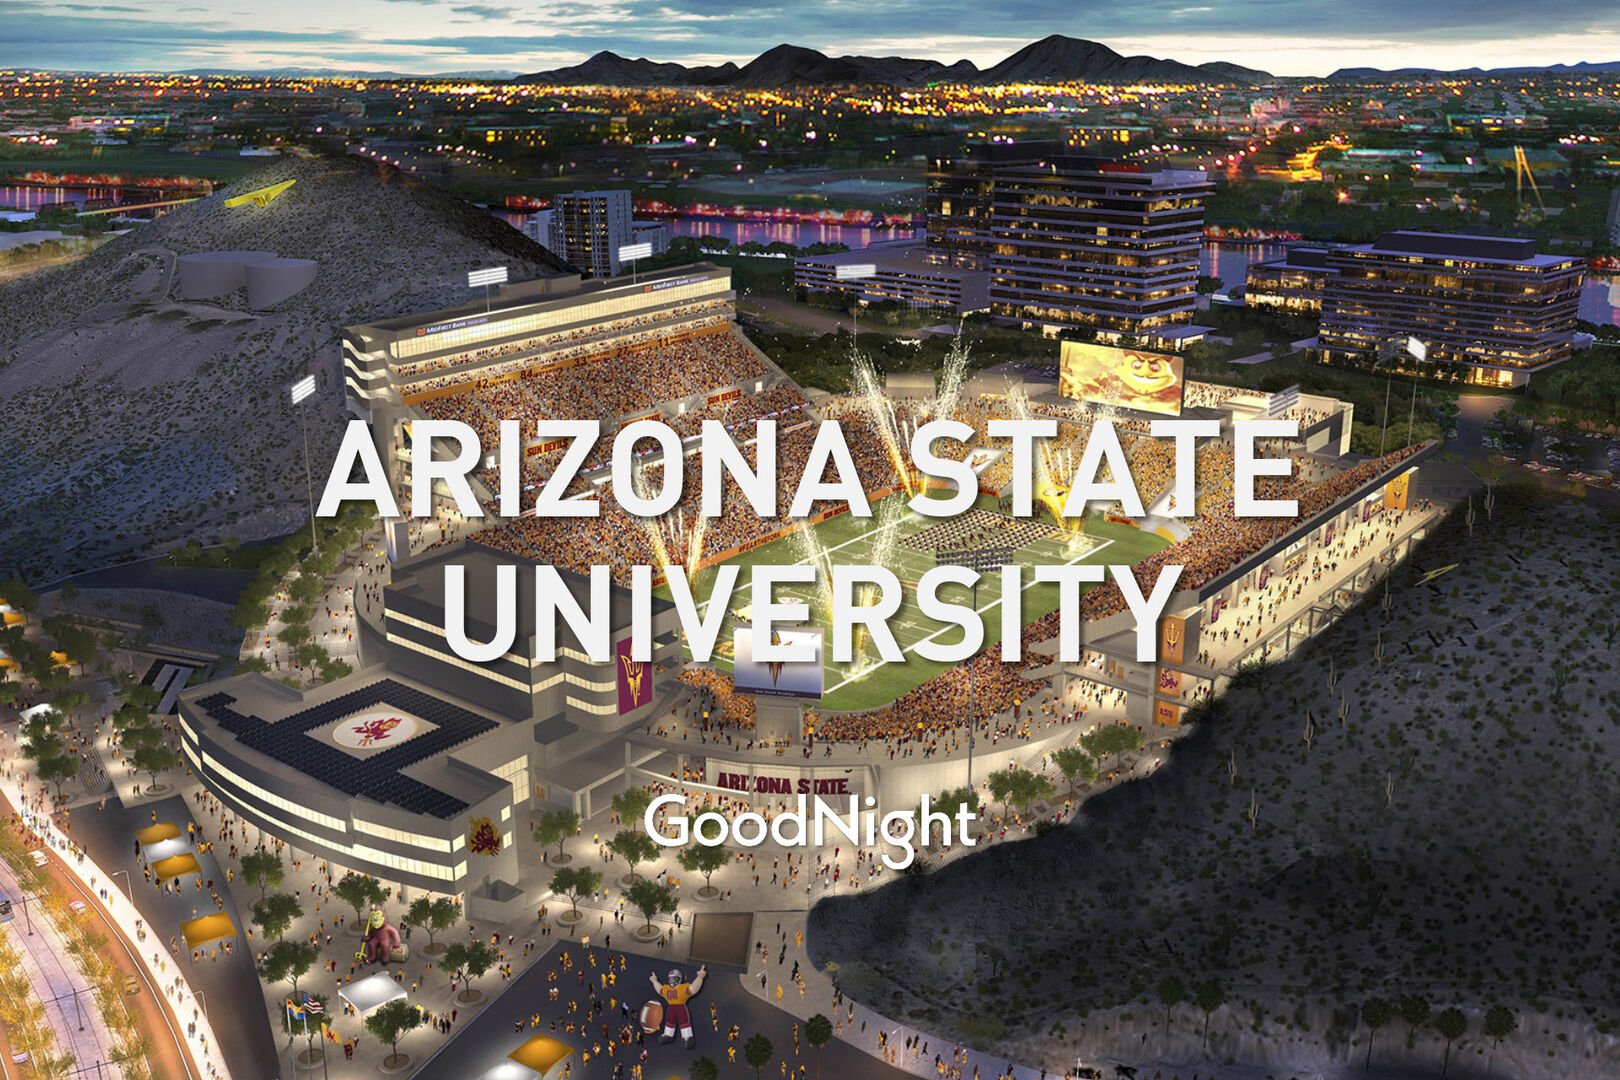 16 mins: Arizona State University